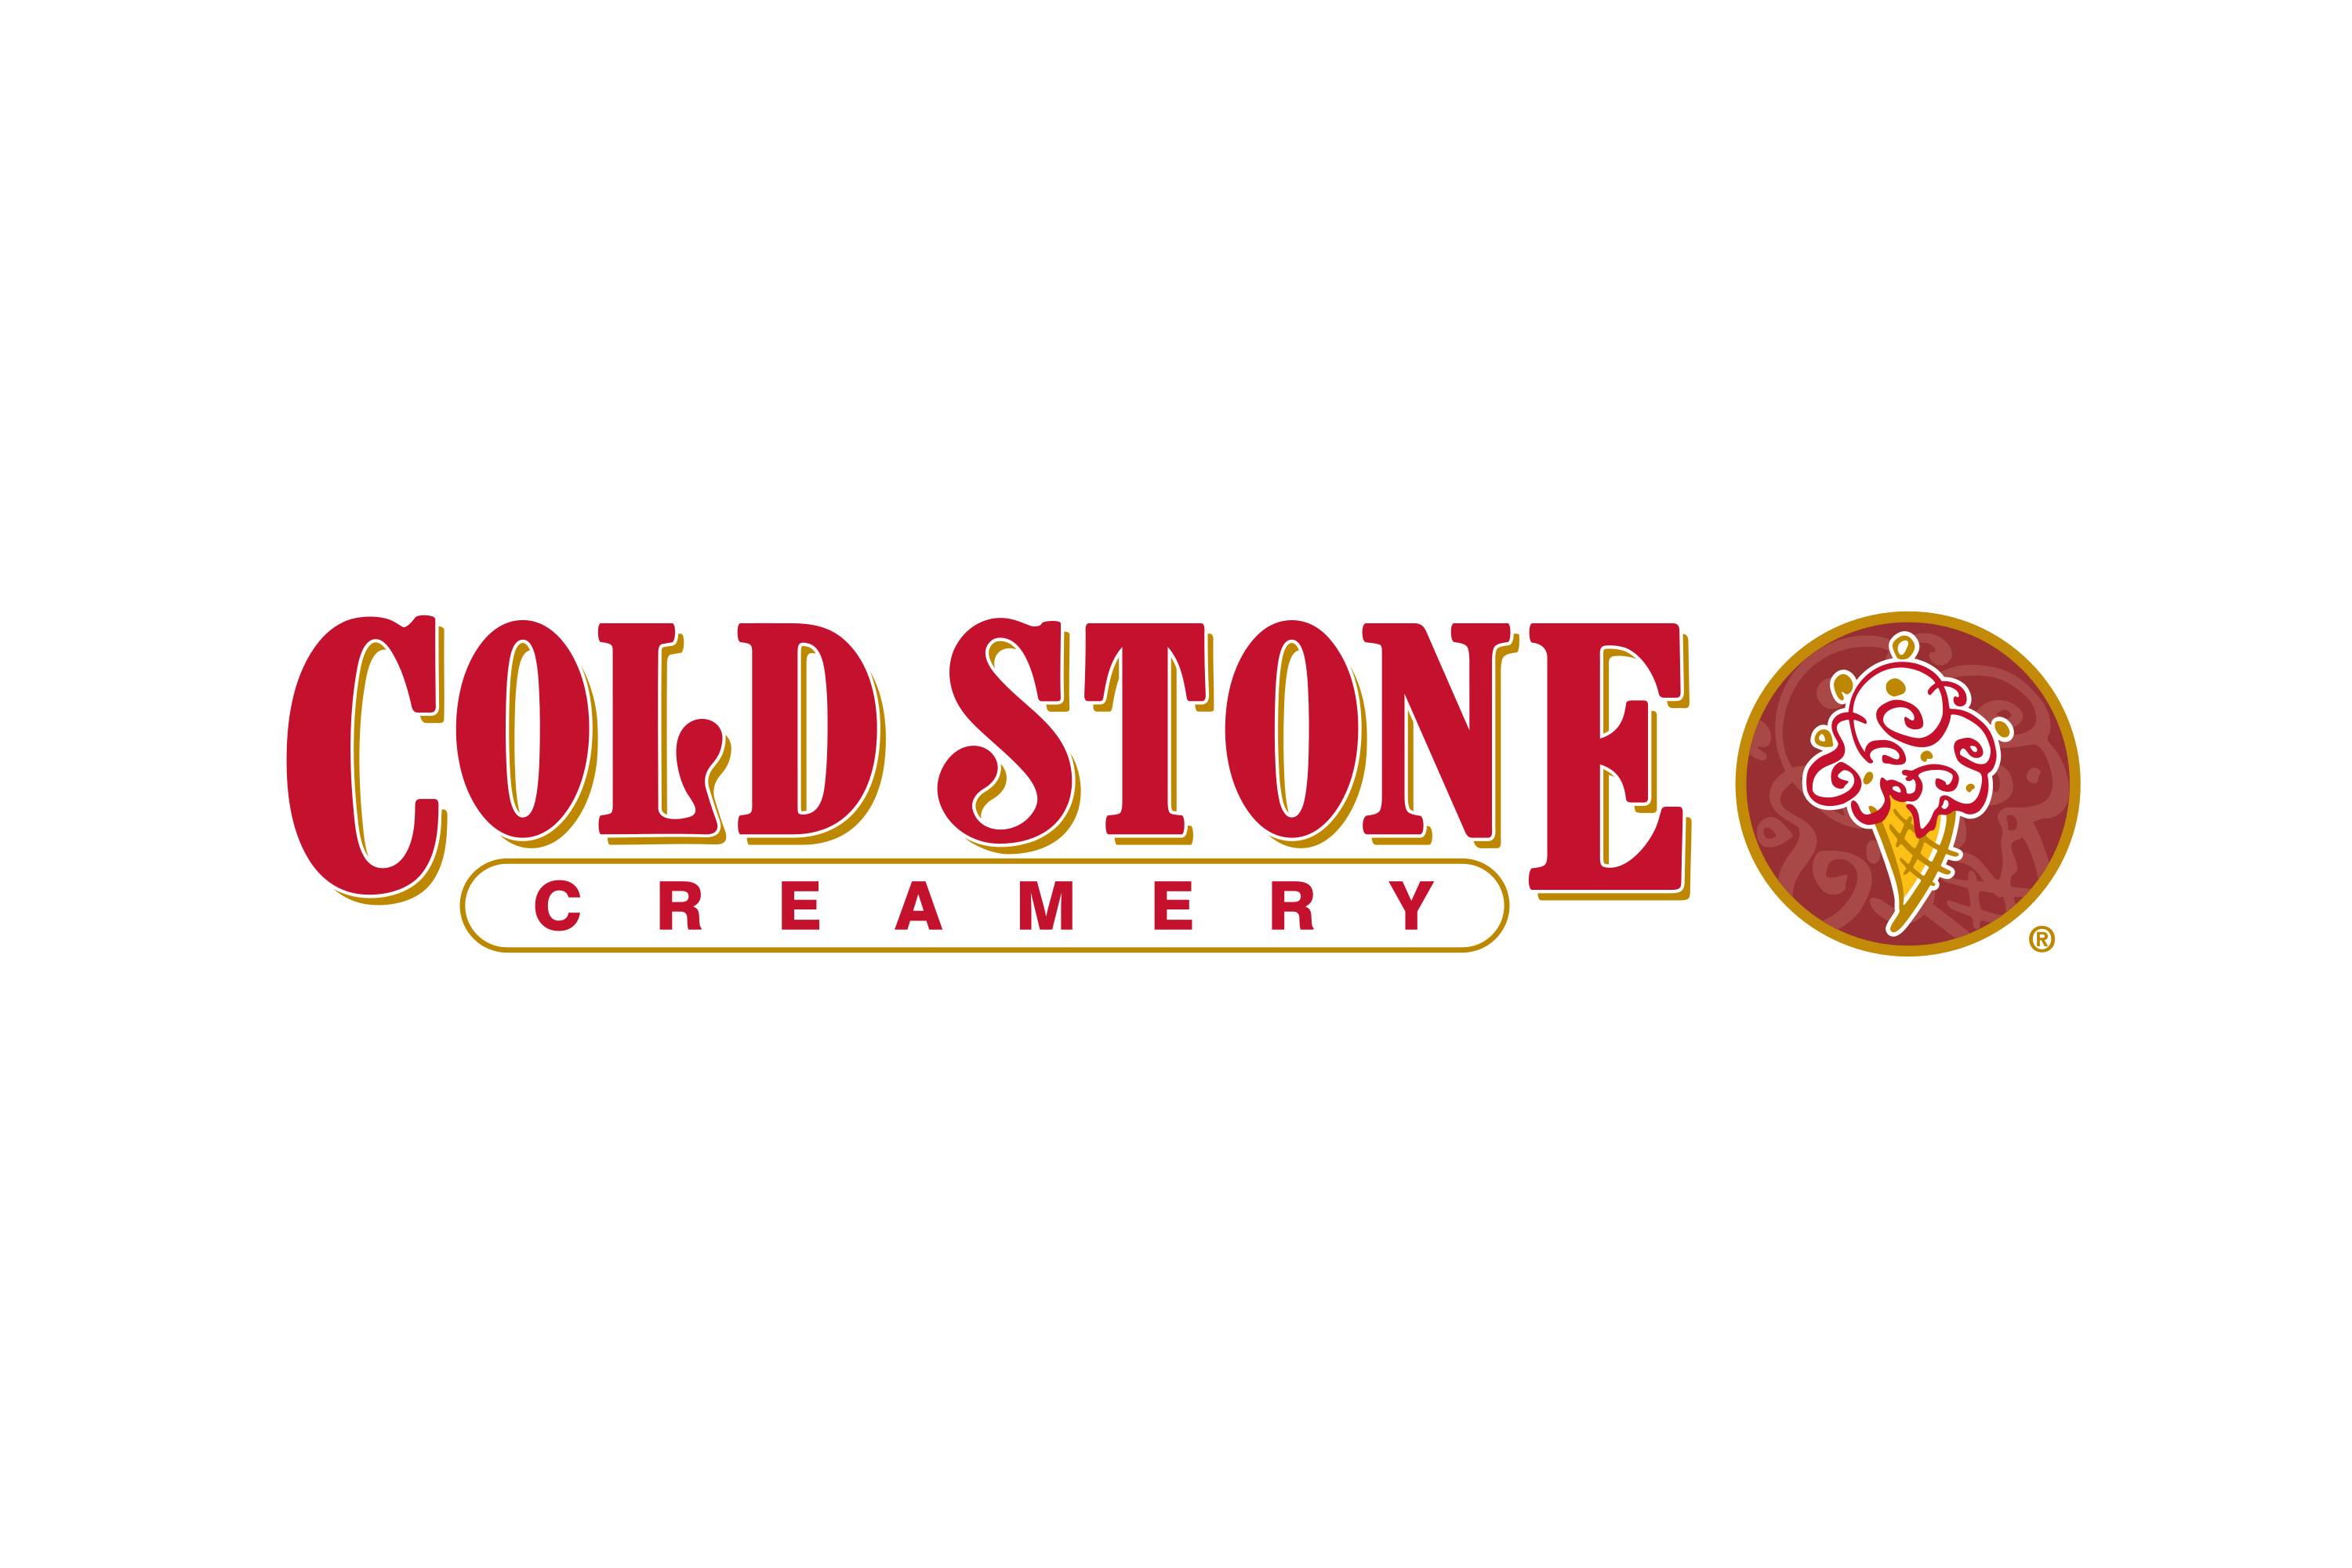 ColdStone Creamery